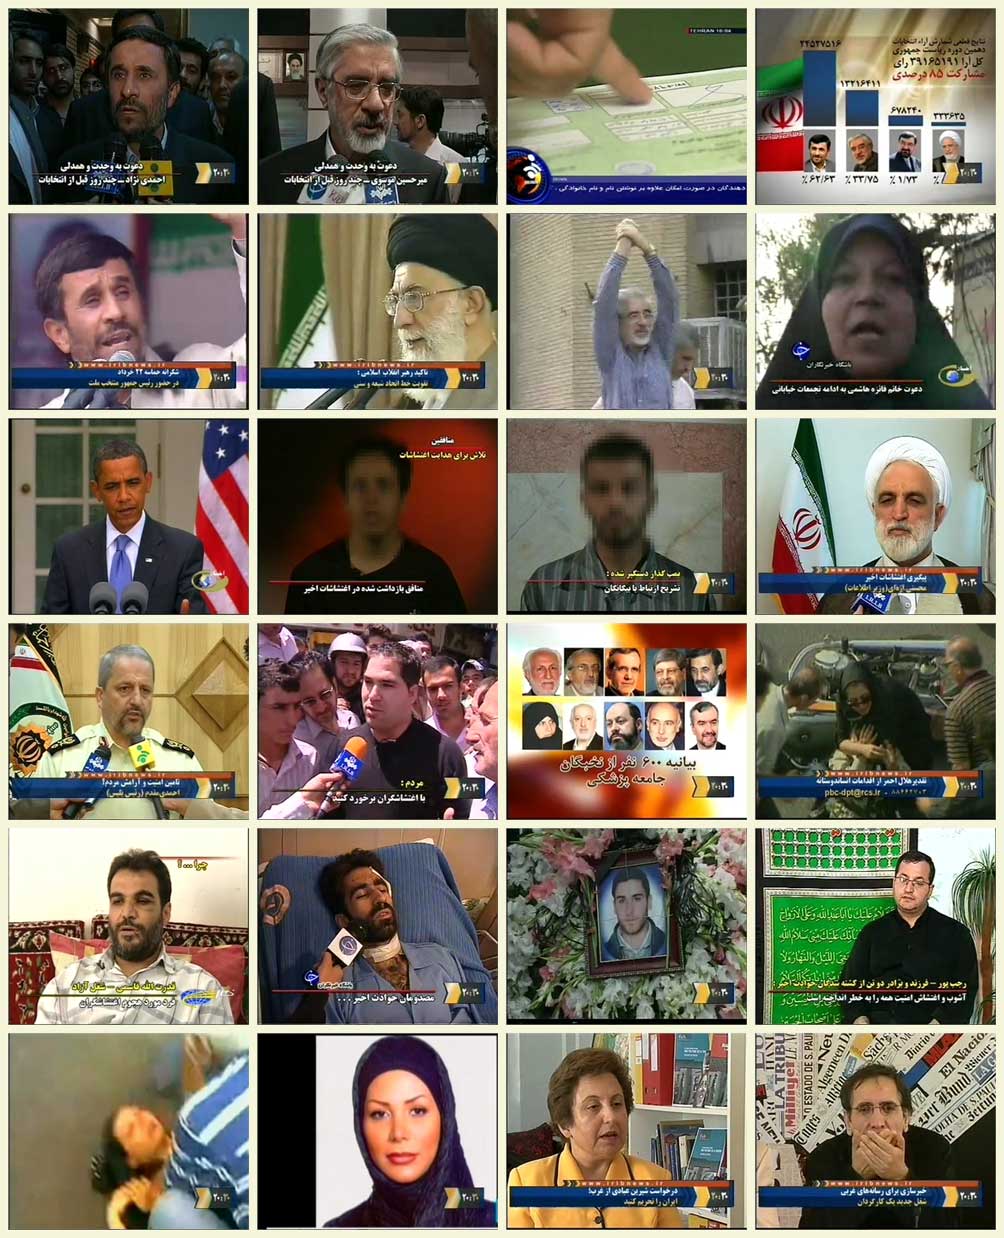 گزیده اخبار انتخابات دهم ریاست جمهوری از 22 خرداد تا 31 خرداد 88 